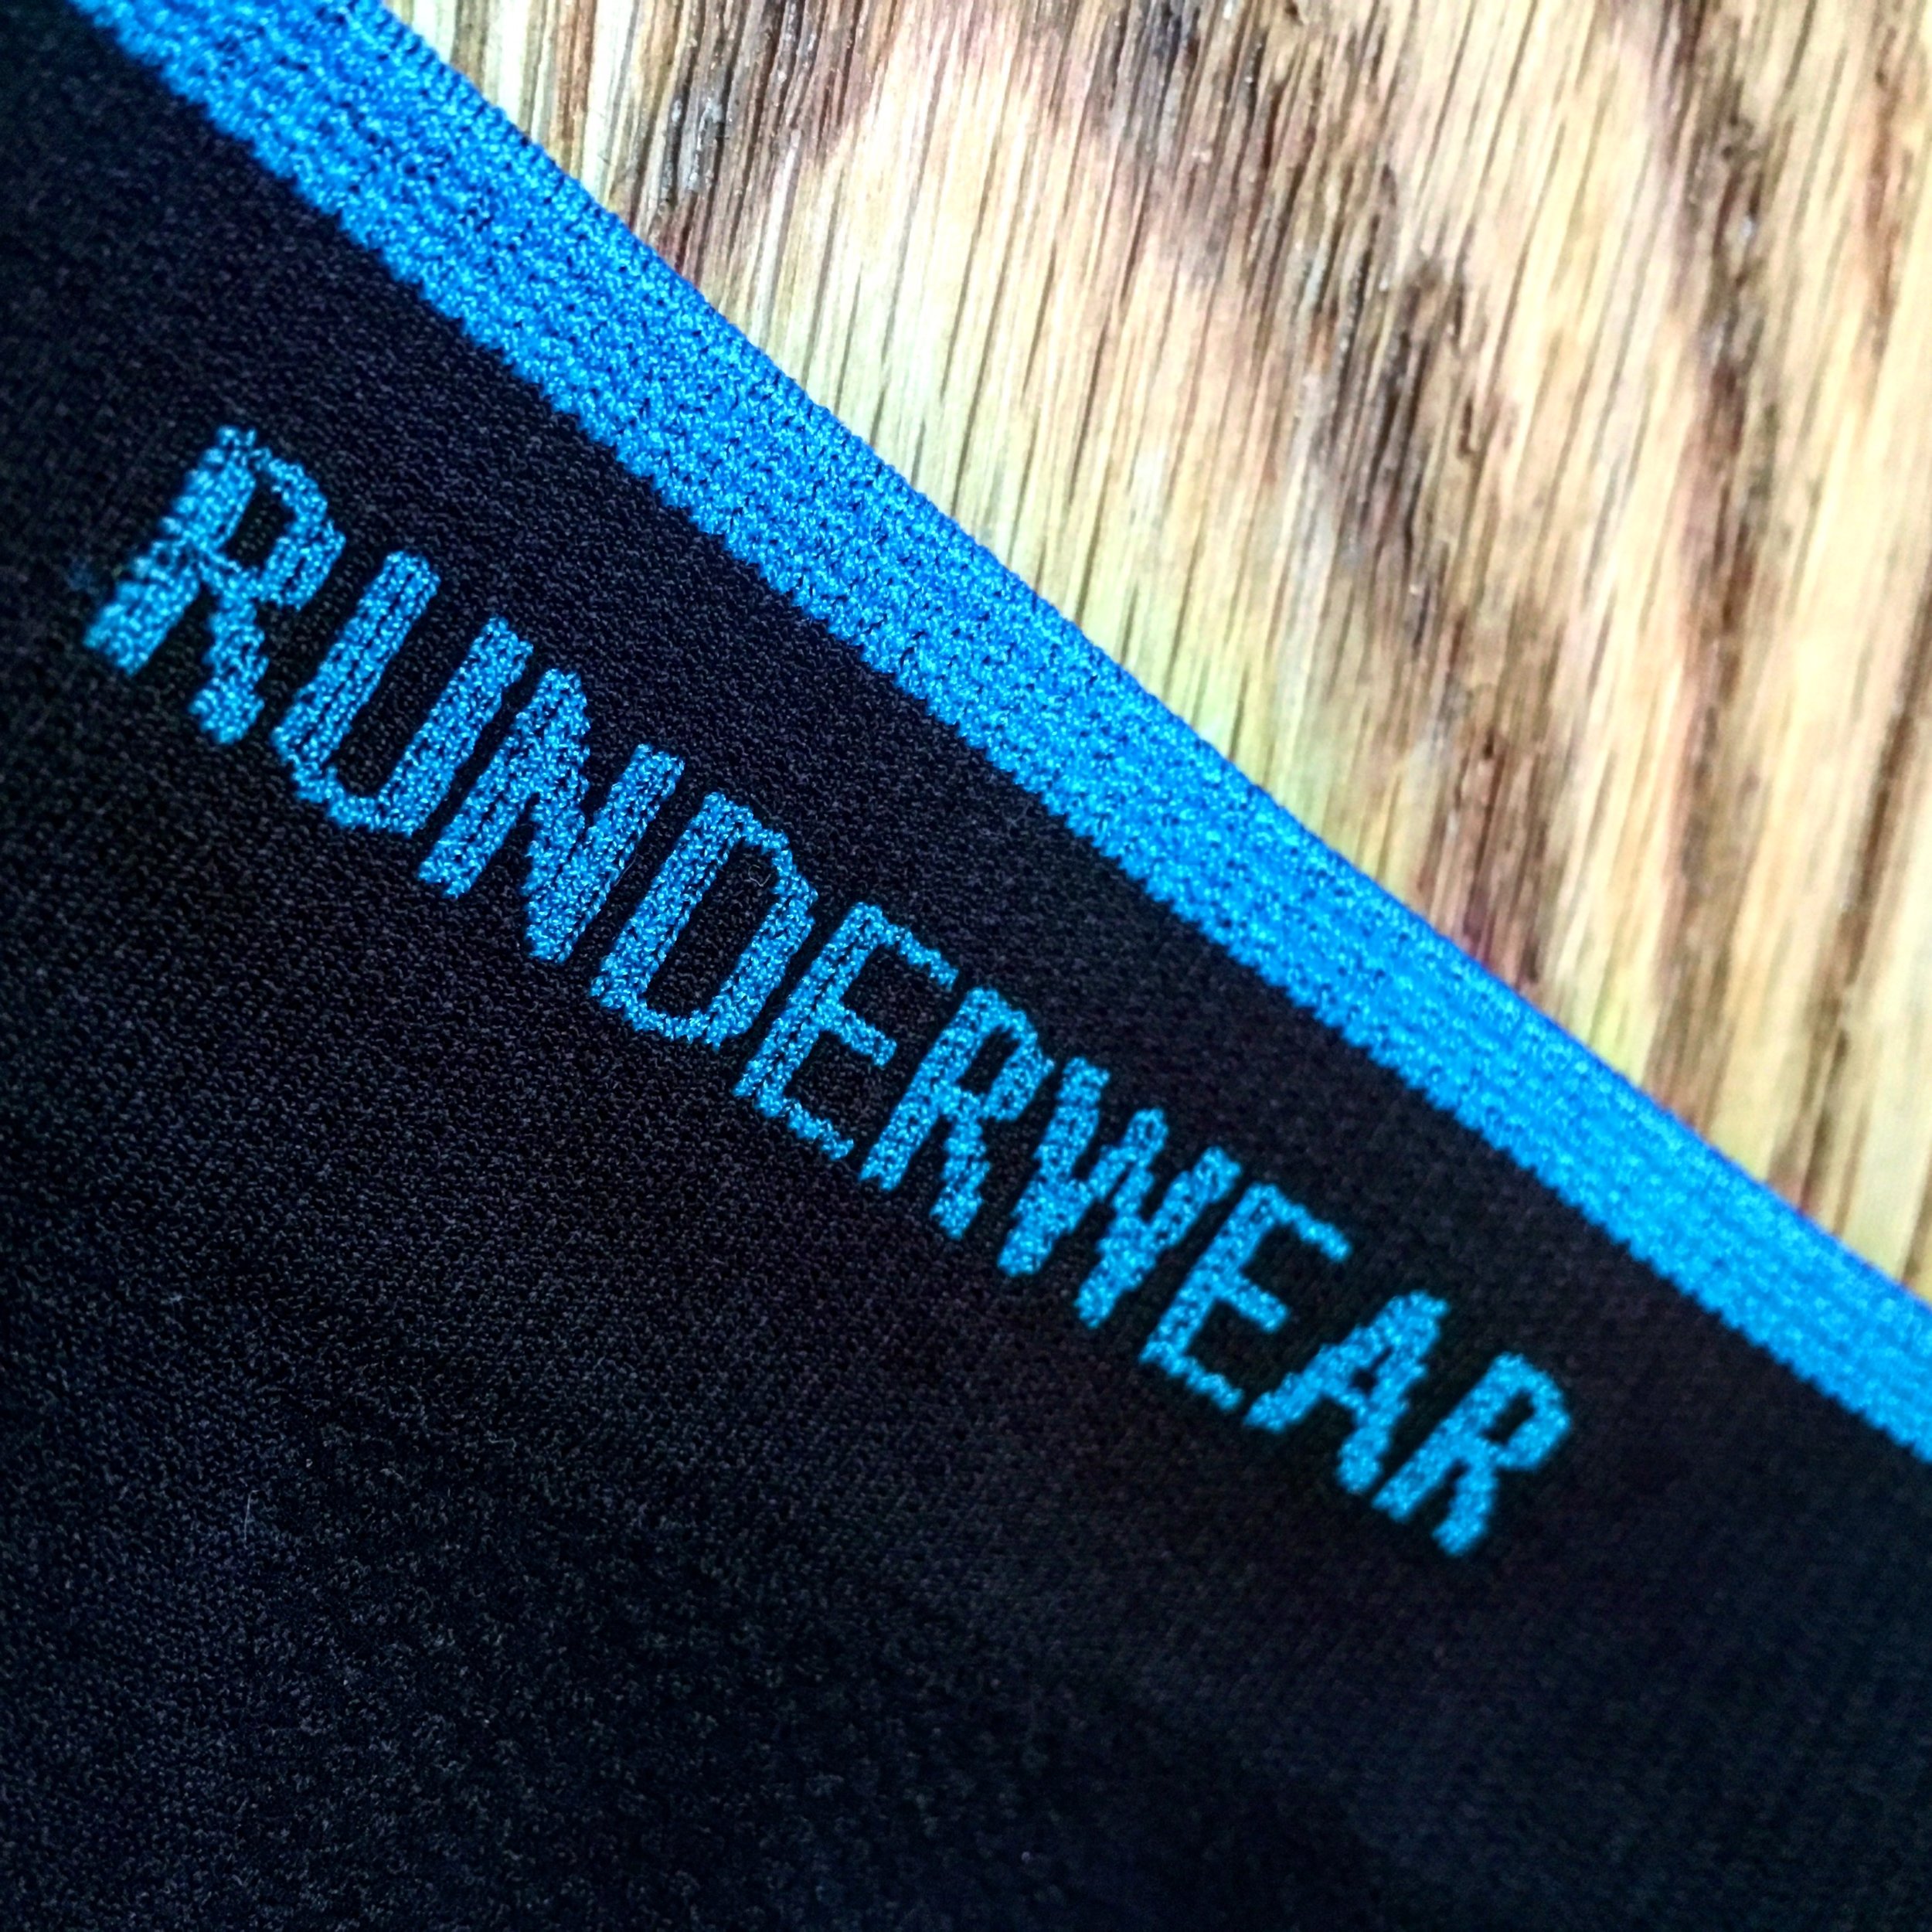 Runderwear - Underwear for Runners